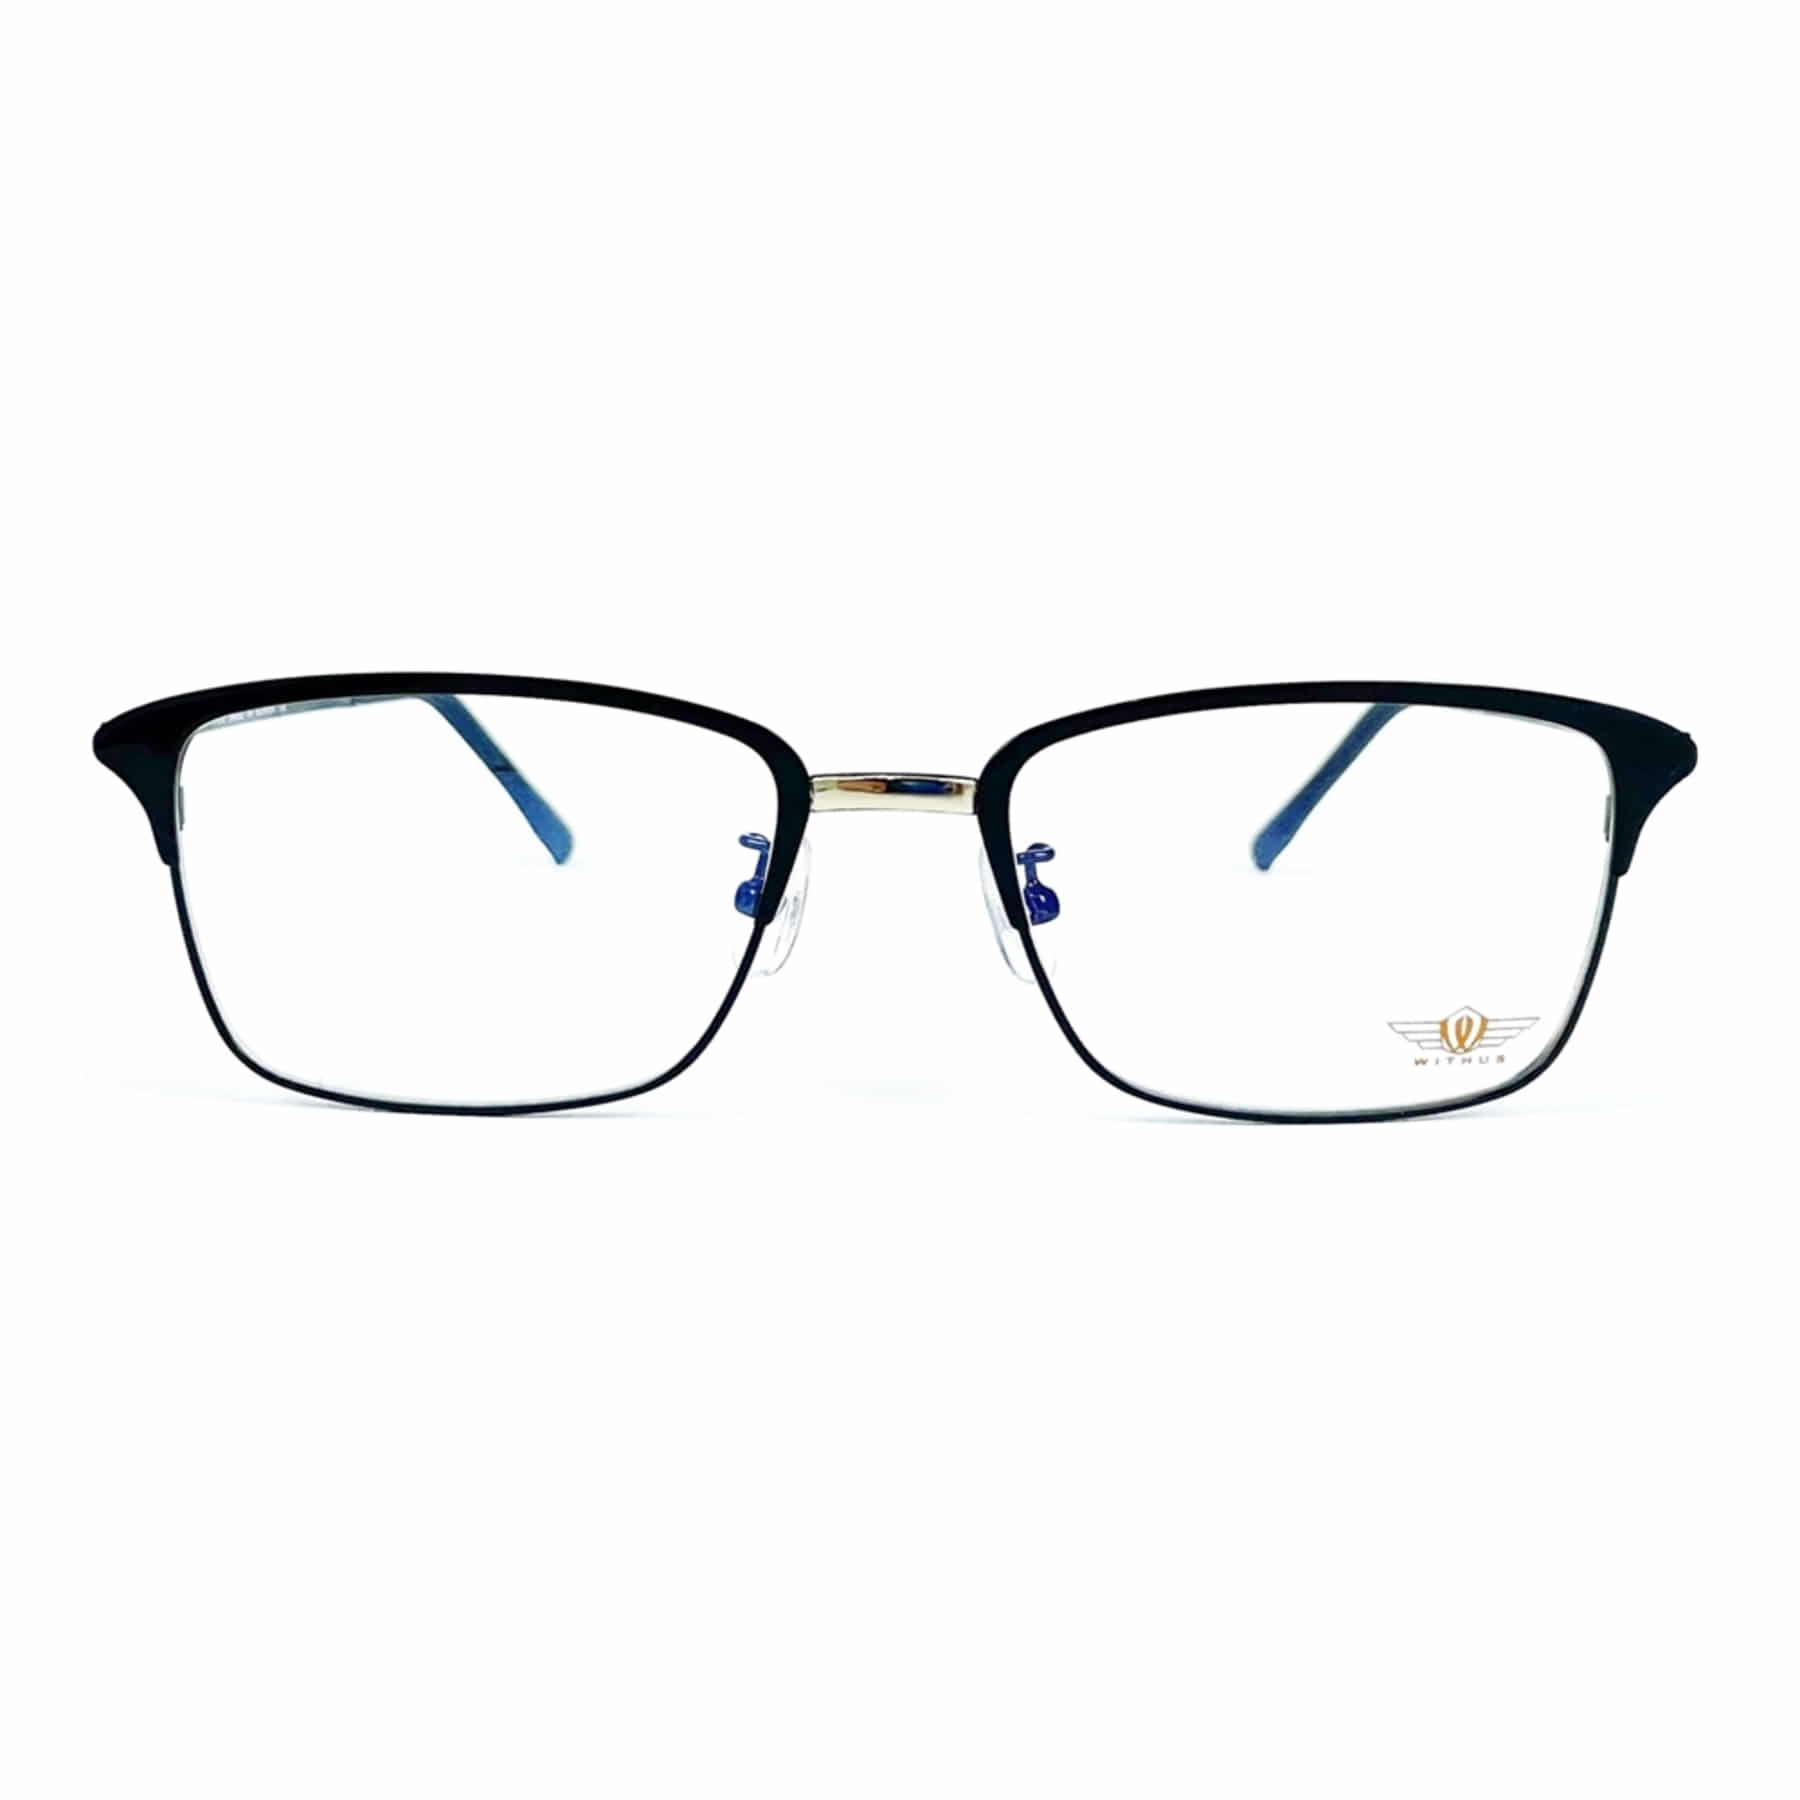 WITHUS-7330, Korean glasses, sunglasses, eyeglasses, glasses